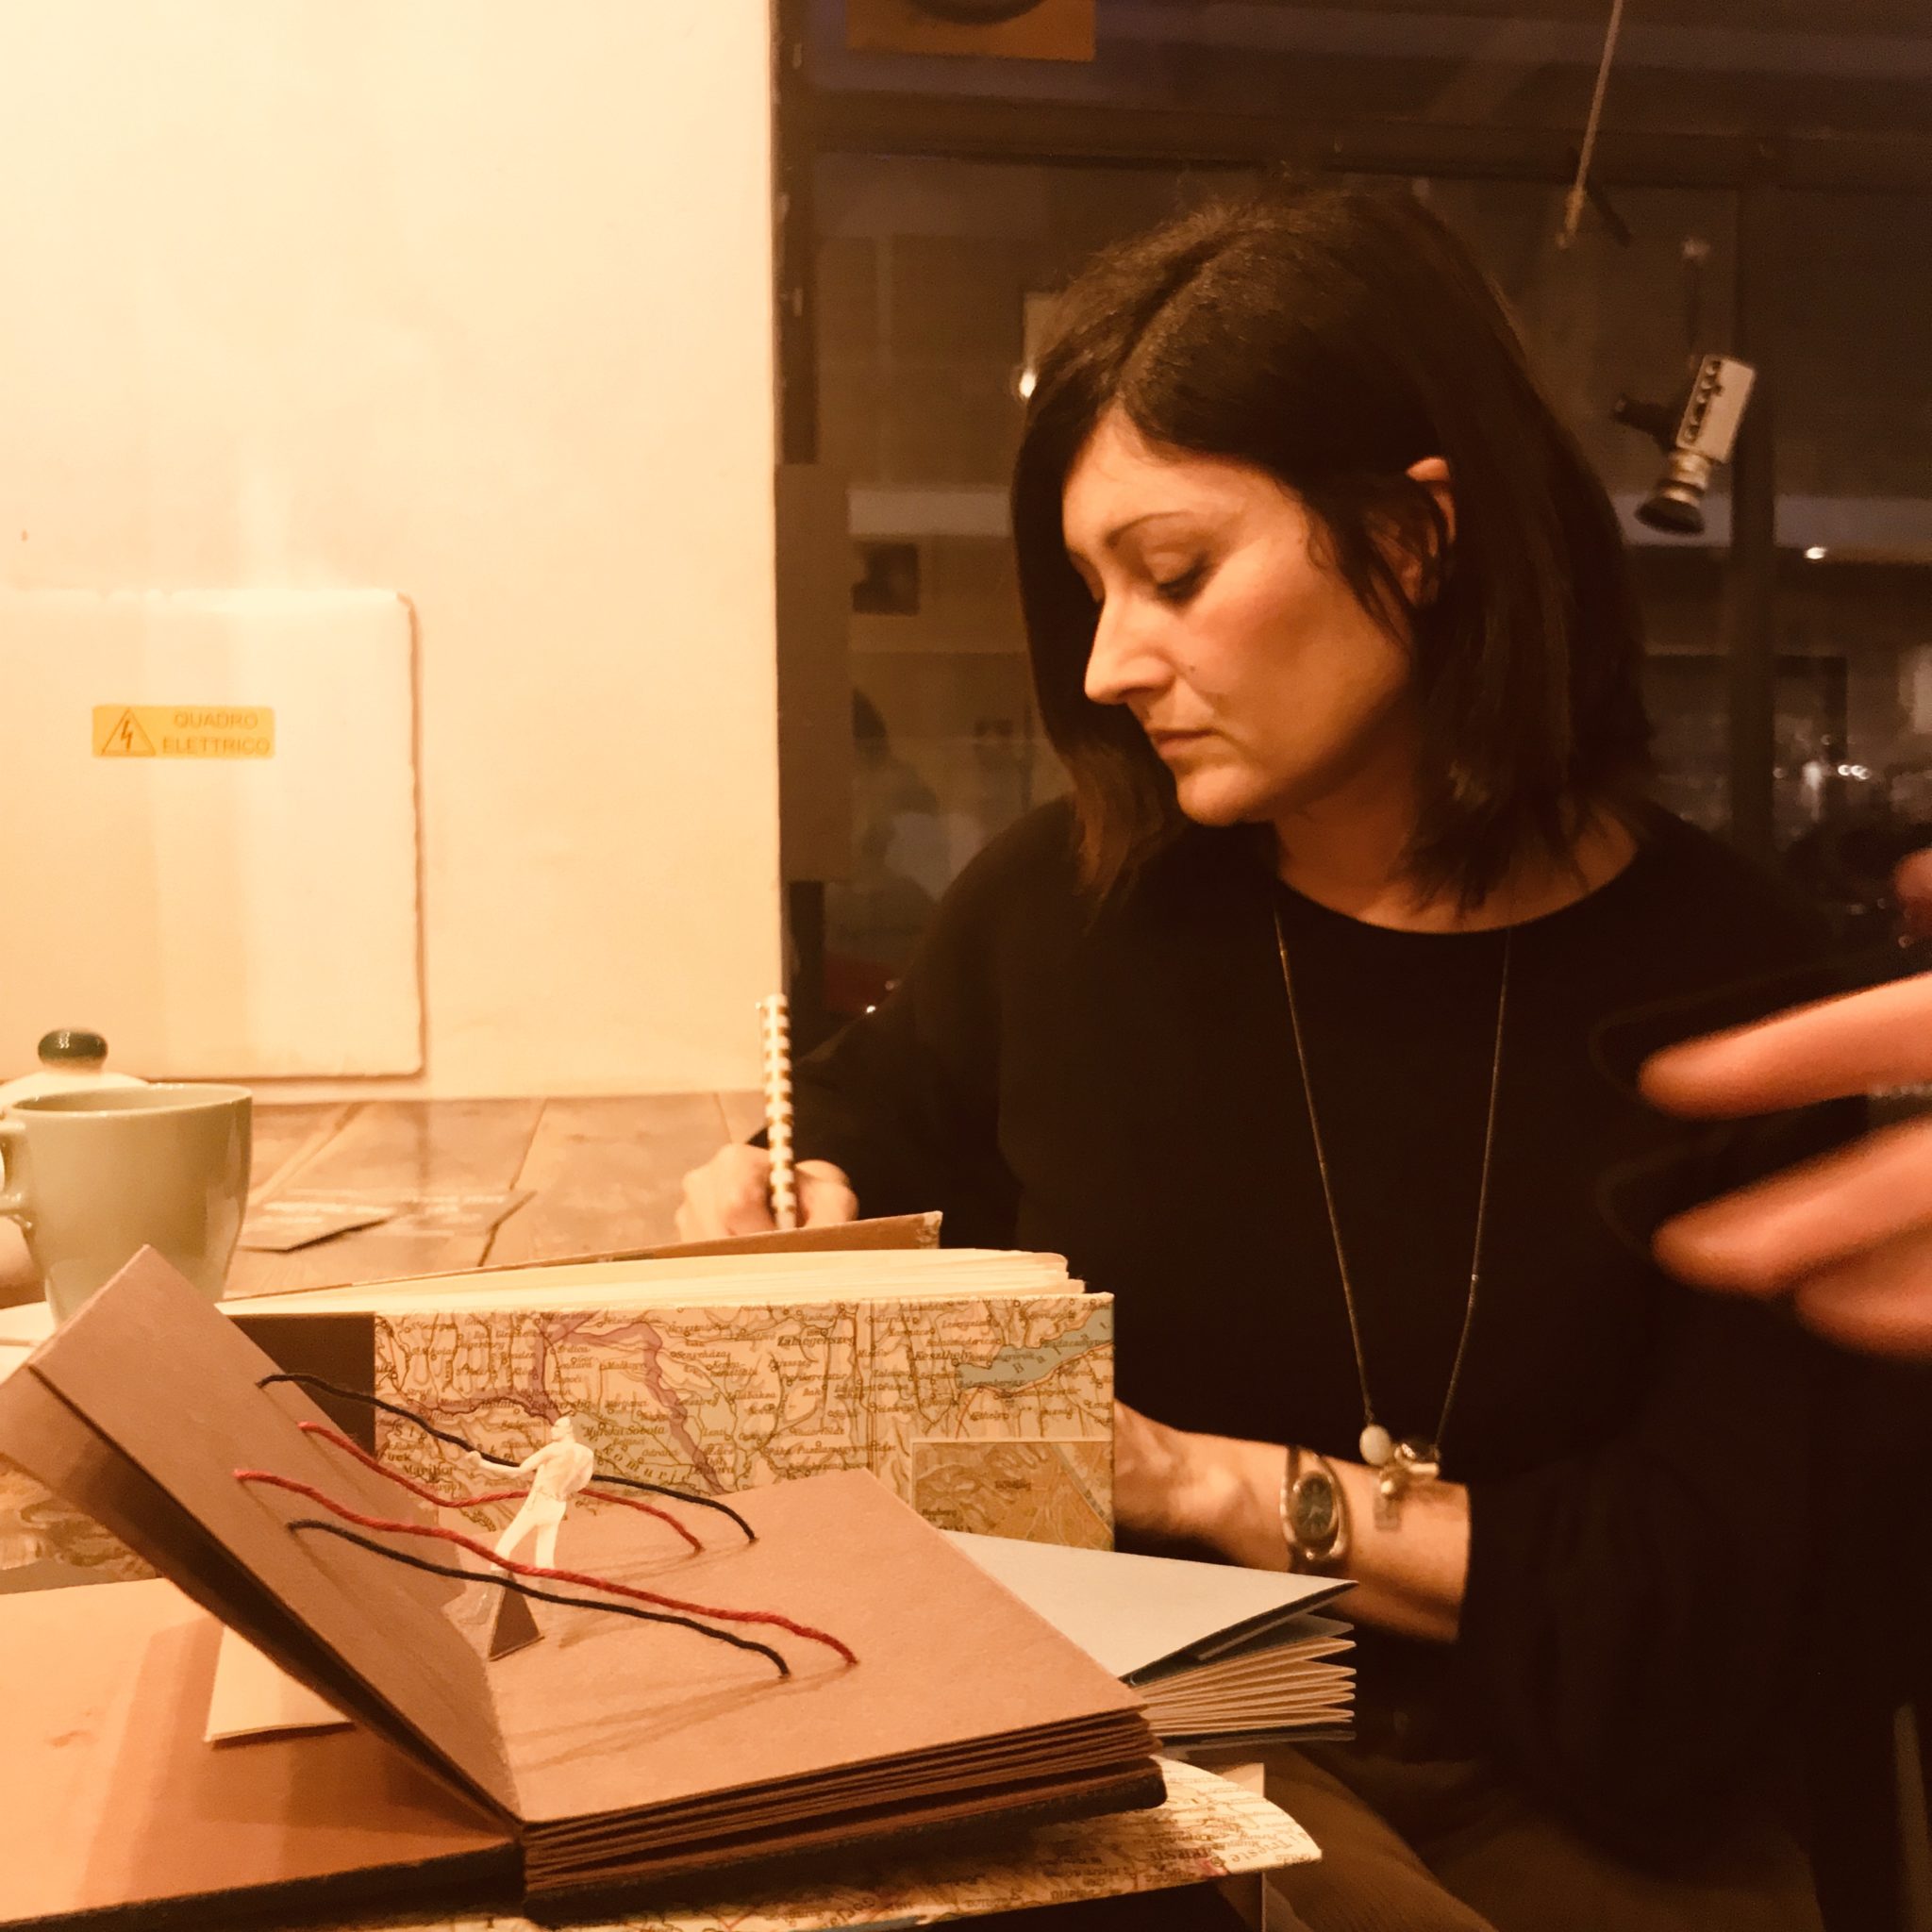 Il collettivo Libri Finti Clandestini recupera carta da riciclo, da scarti di tipografia a poster e sacchetti del pane, per farne libri d'arte